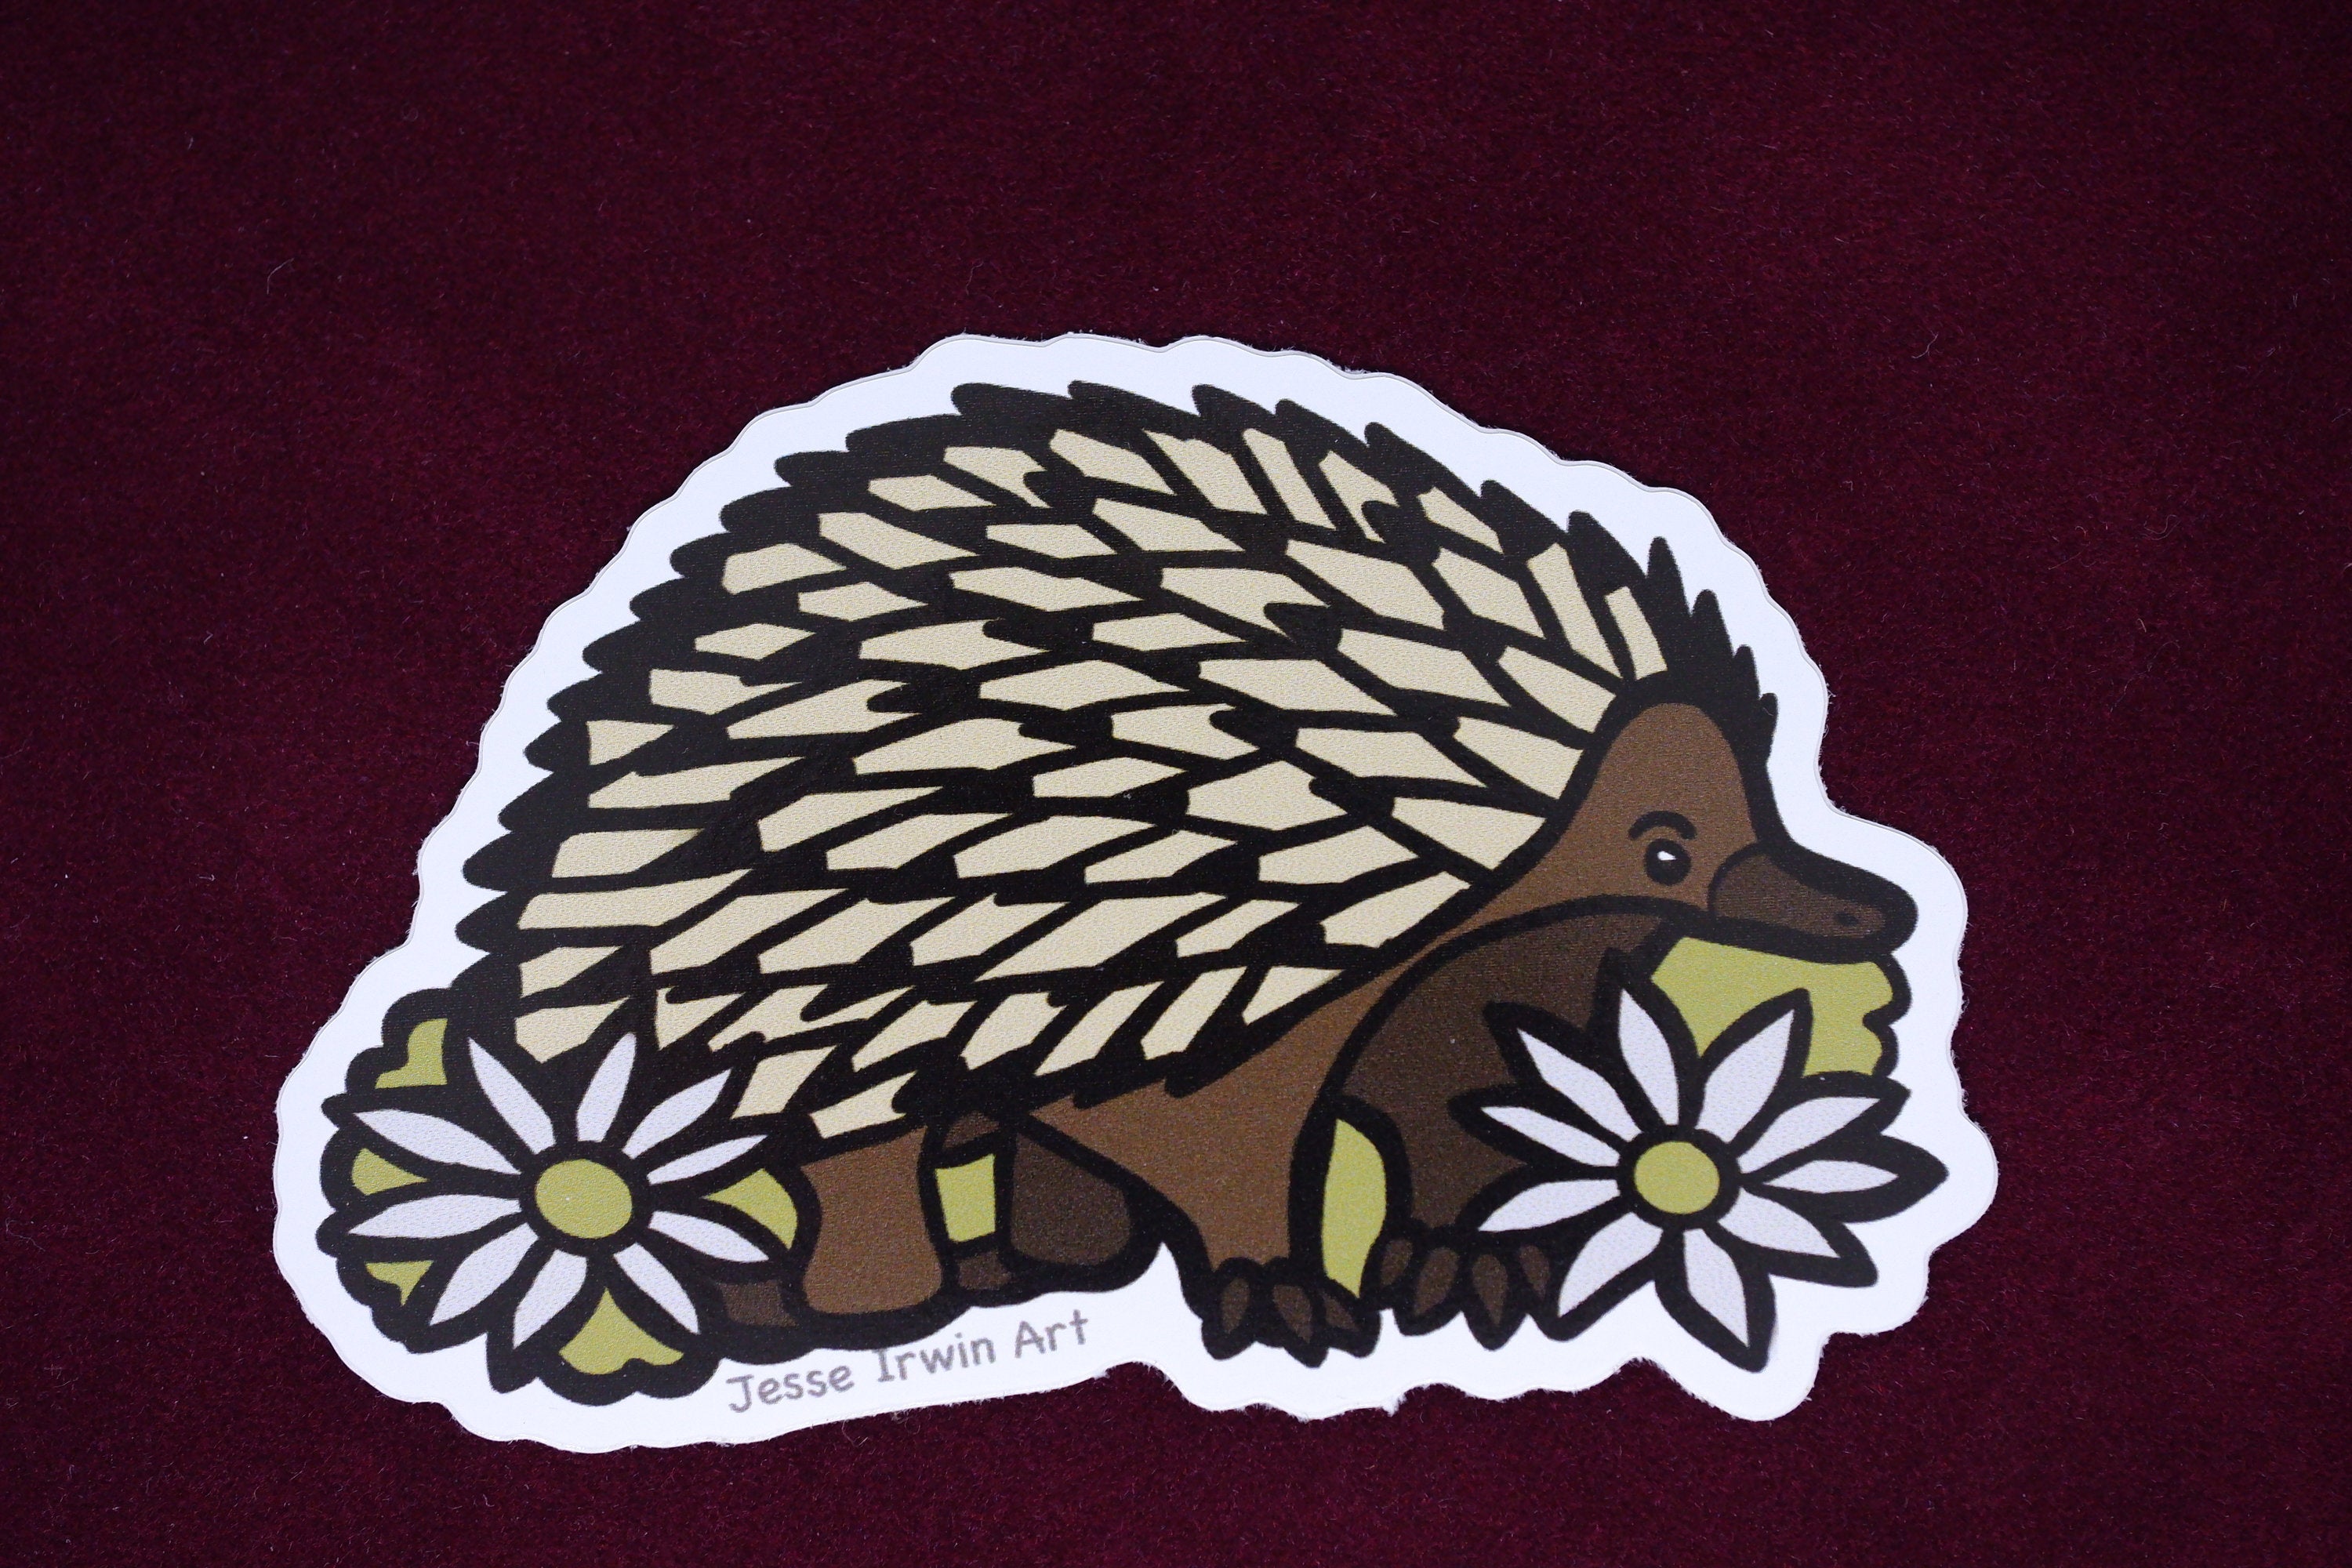 Echidna and Flannel Flower Vinyl Sticker - Australian Animals and Flowers - Die Cut Vinyl Sticker - Laptop Decal